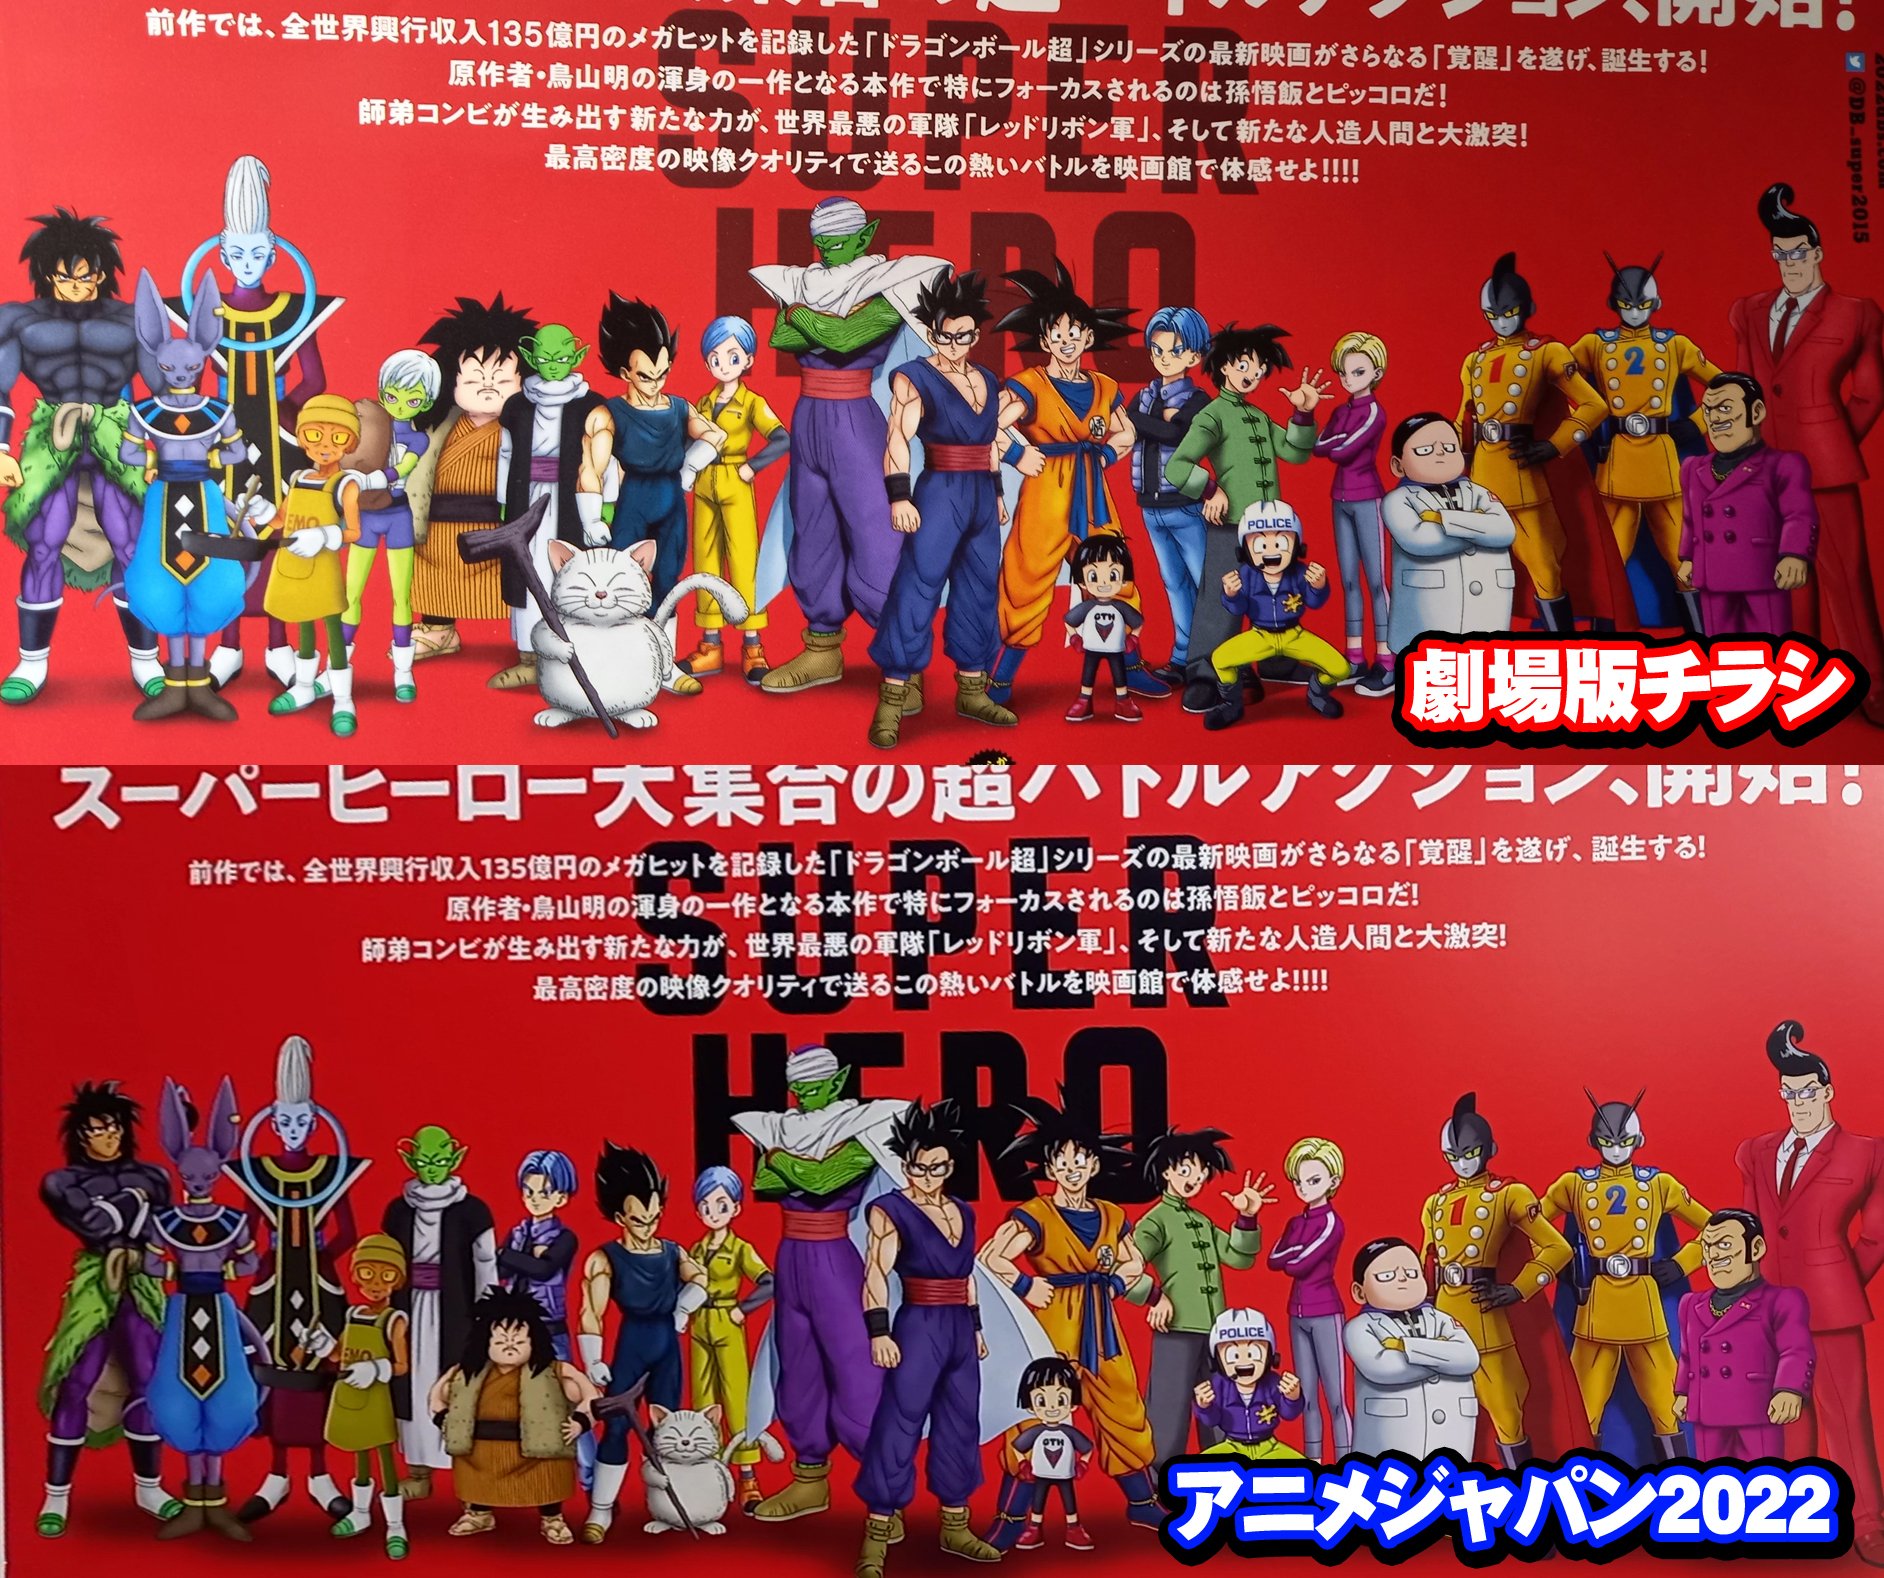 Kami Sama Explorer - Dragon B - SUPER DRAGON BALL HEROES BIG BANG MISSION  ANIME PROMOCIONAL EPISÓDIO 1!! Lançamento dia 5 de Março. Título: A Invasão  dos Deuses da Destruição! O Início